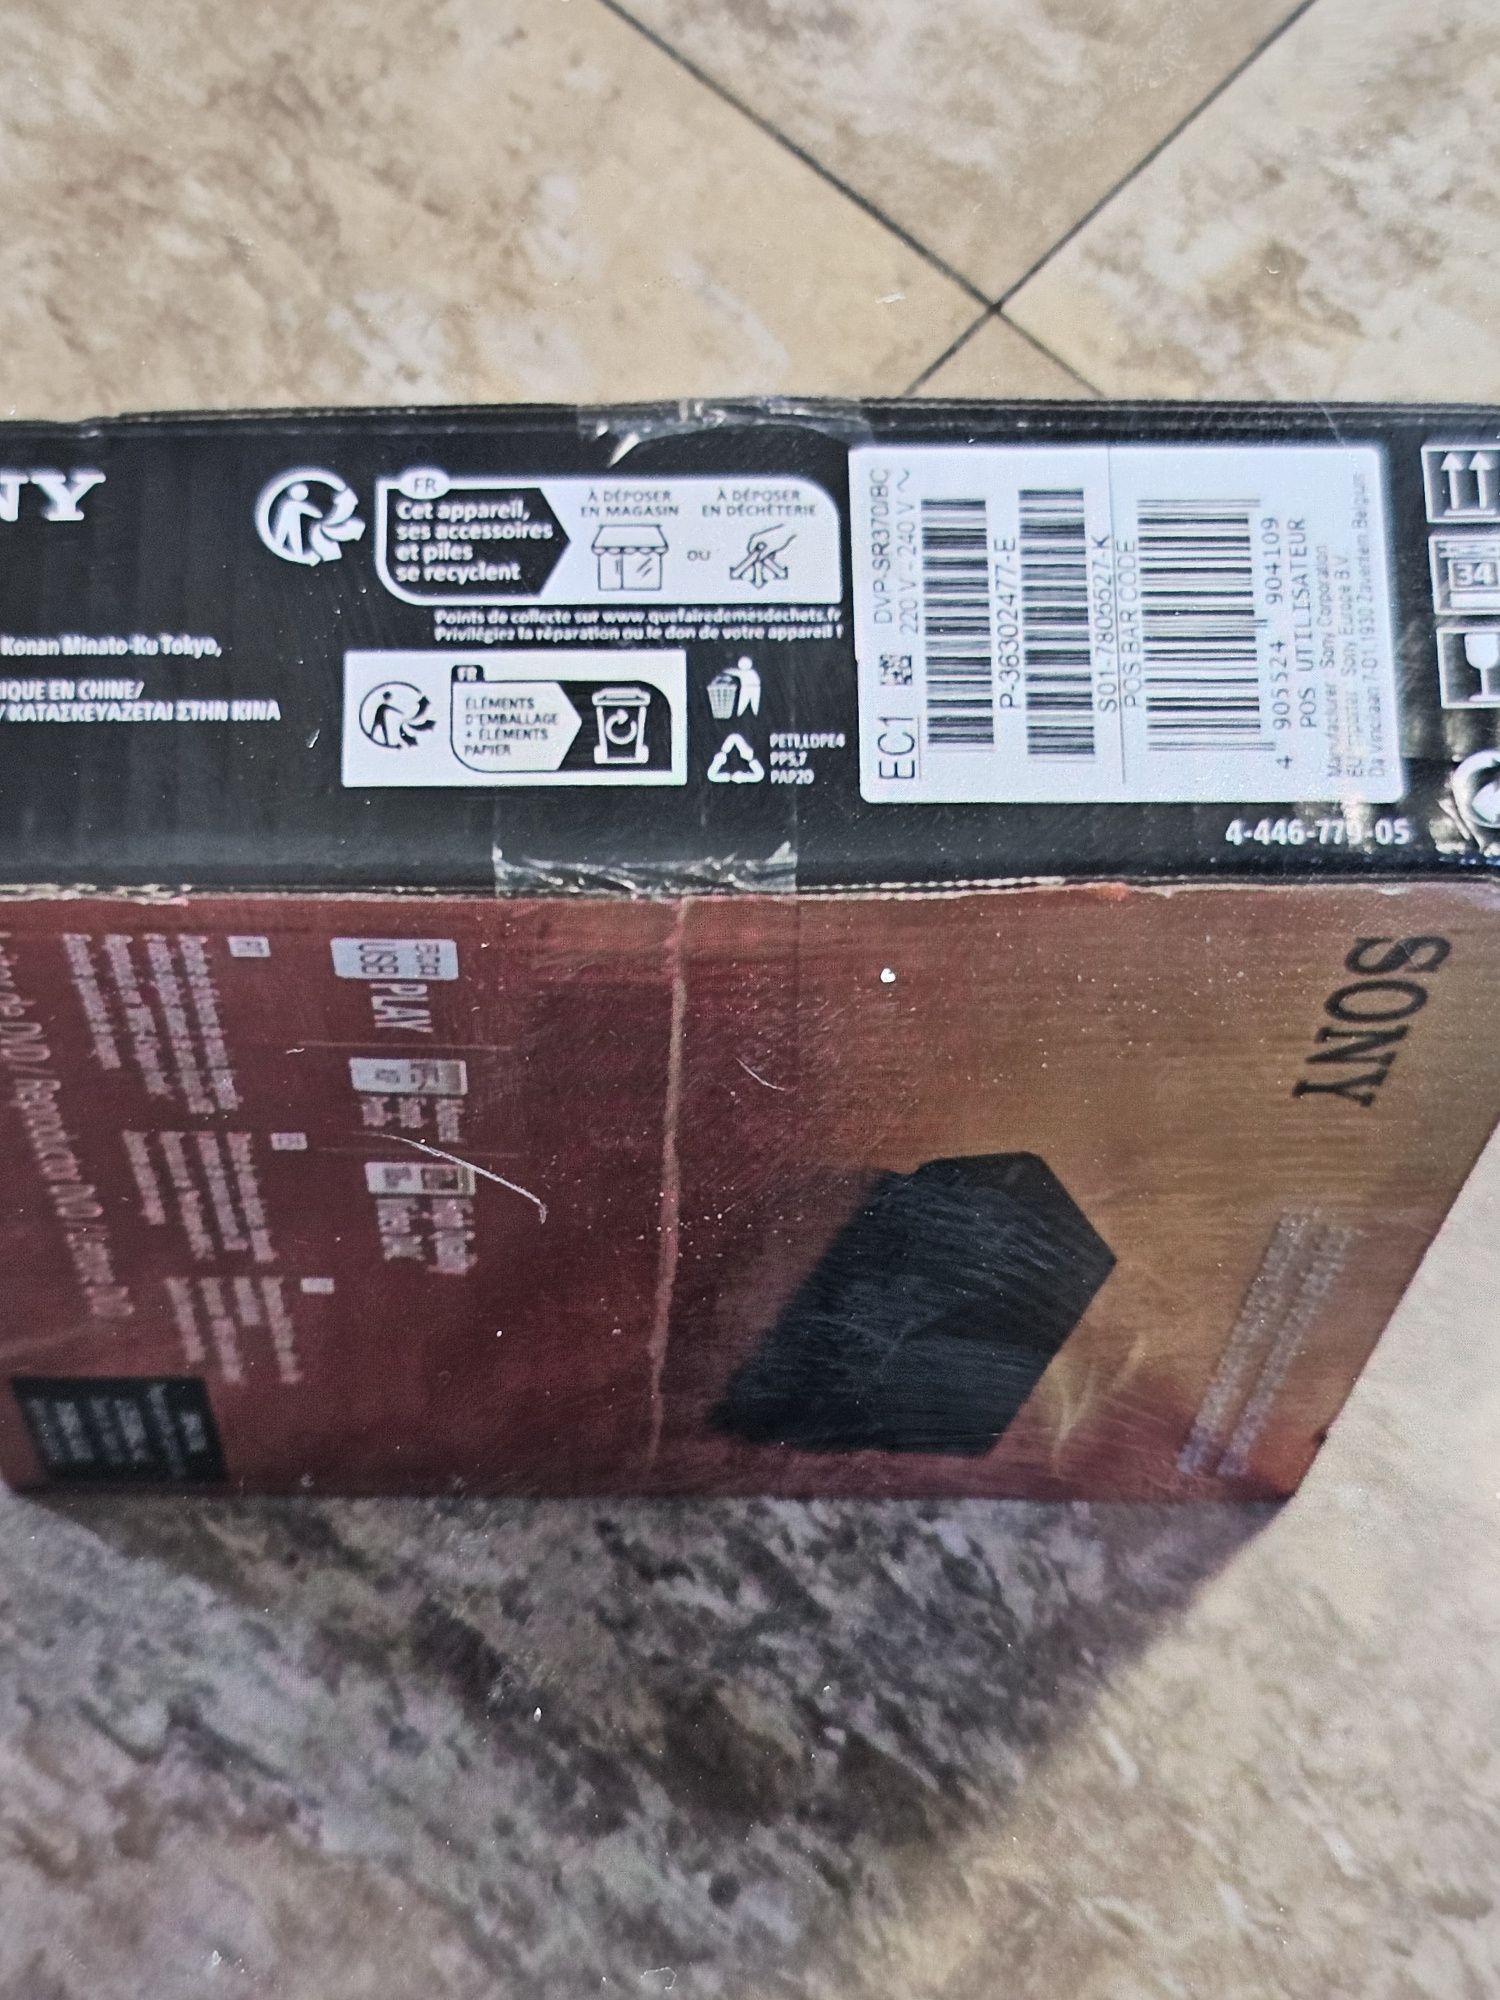 DVD Player Sony DVPSR370 (sigilat)